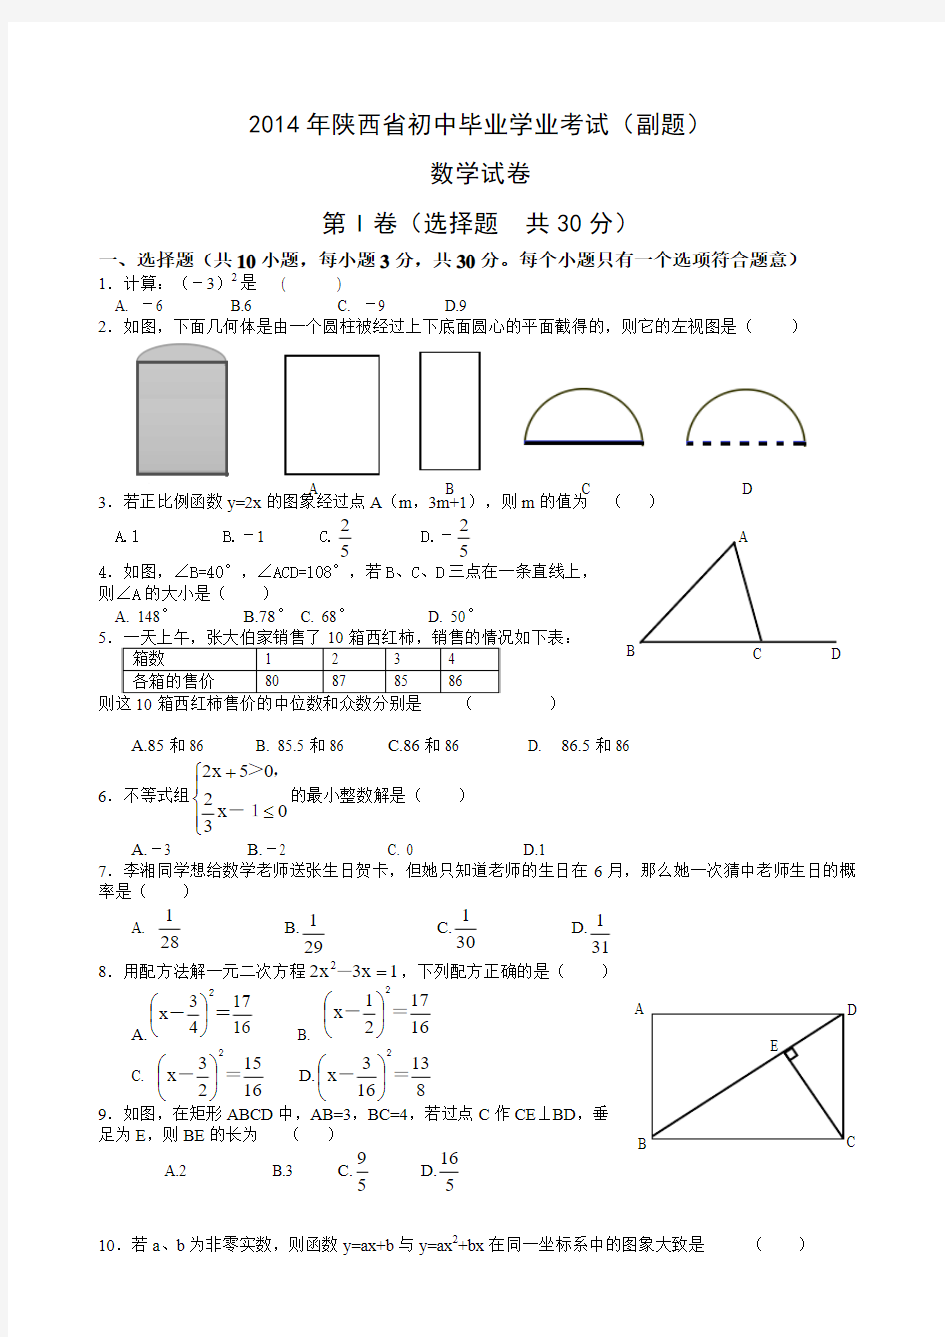 2012-2014年陕西中考数学副题(2015年待续)